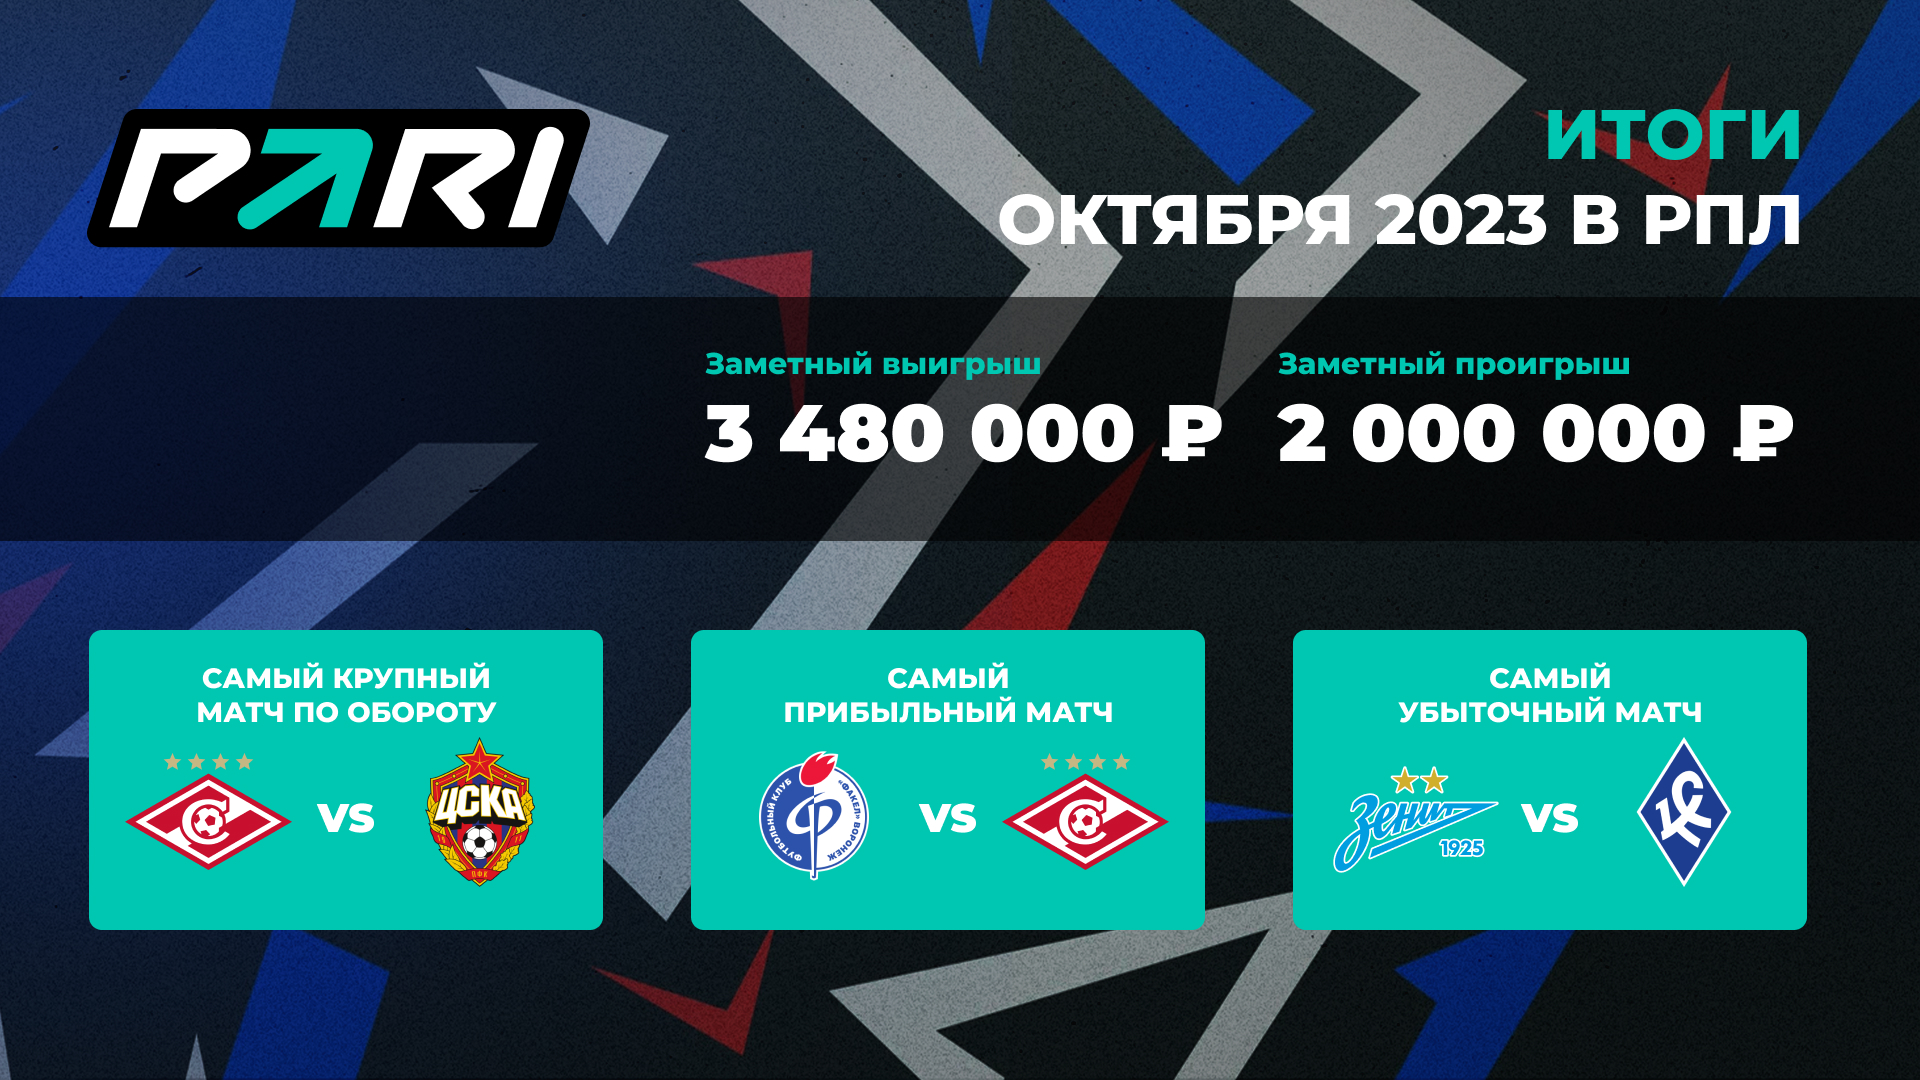 Матч «Спартак» — ЦСКА стал самым популярным событием РПЛ в октябре в PARI